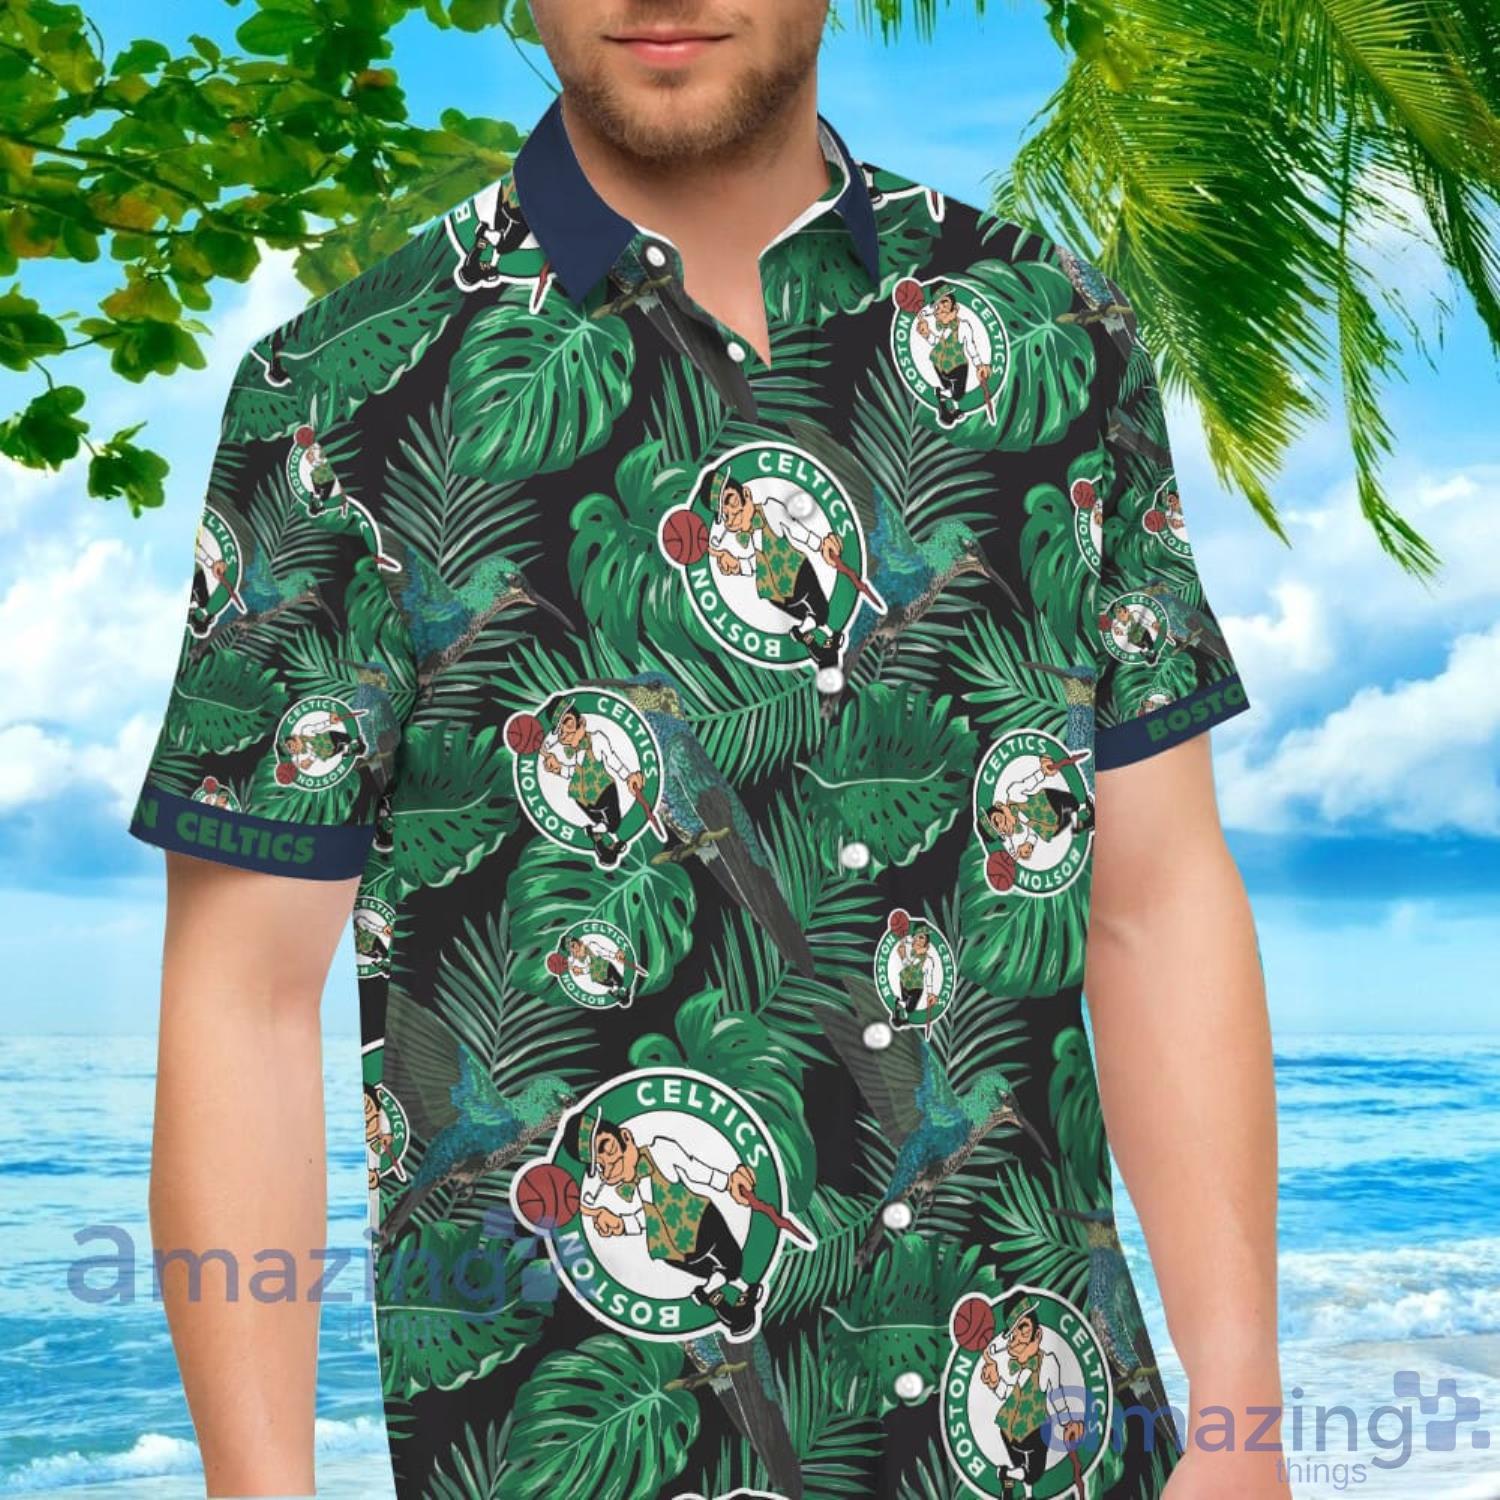 NBA Boston Celtics Hawaiian Shirt Palm Trees Beach Vacation Gift